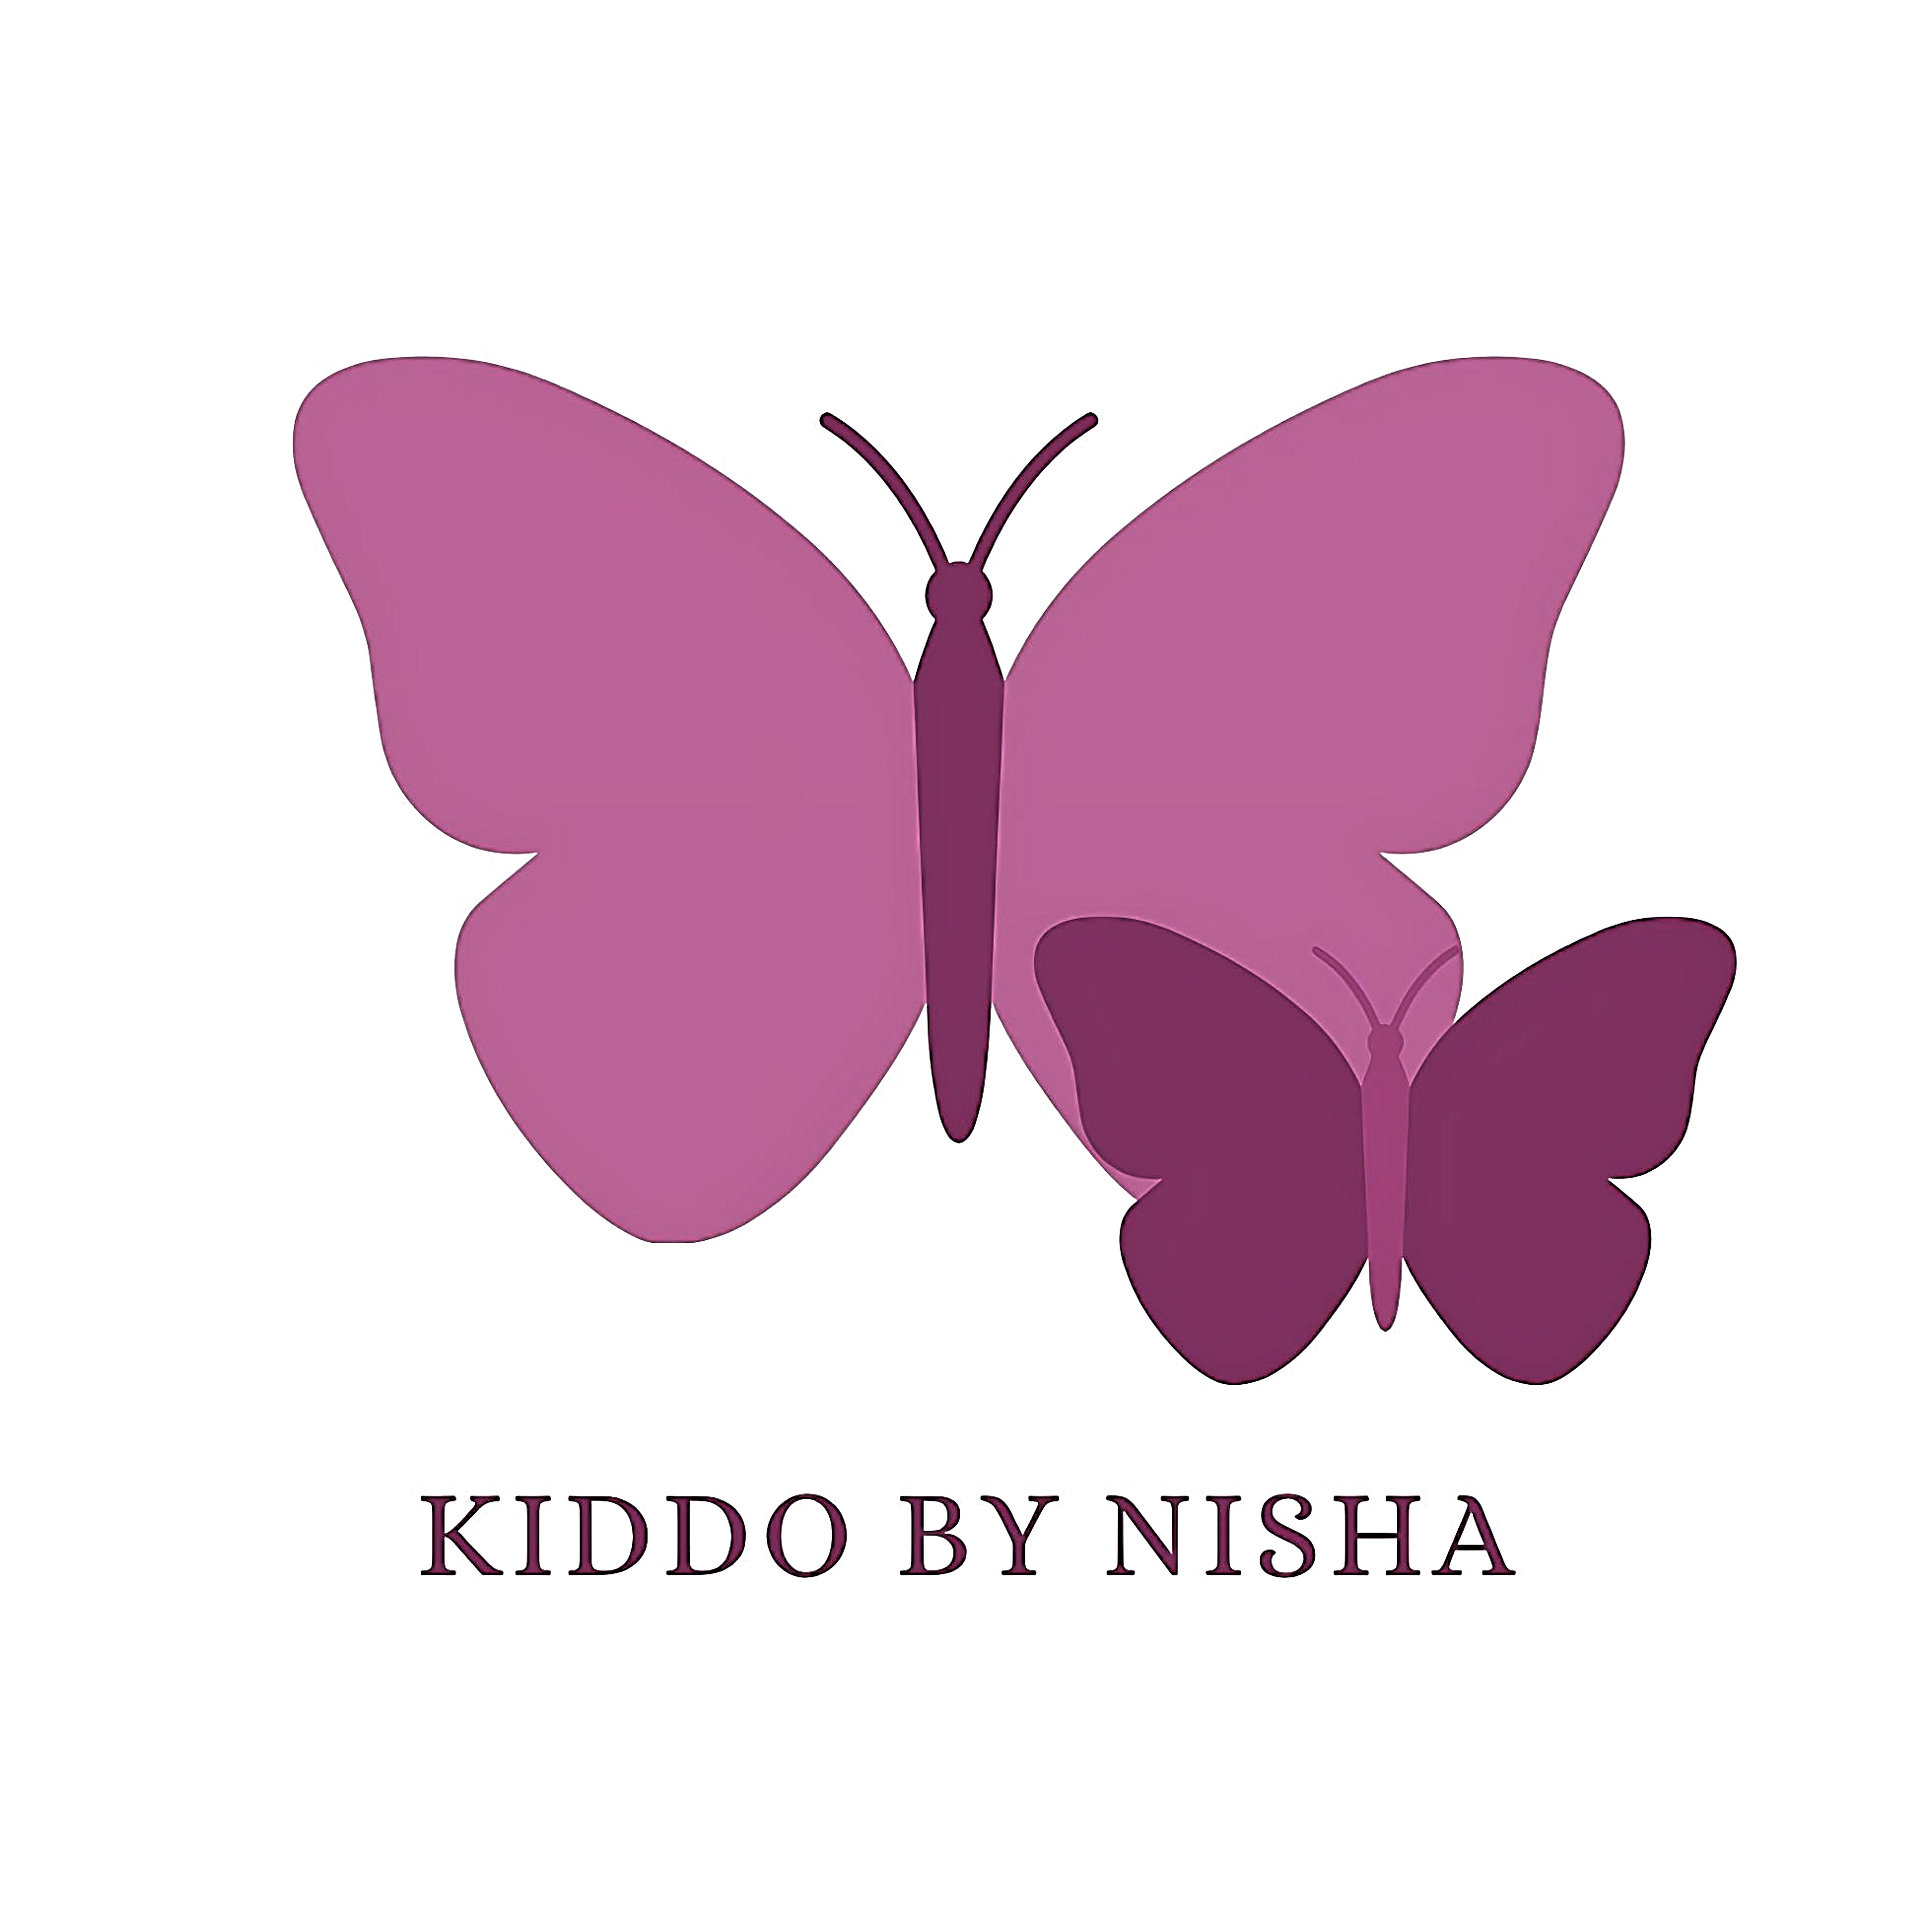 Kiddo by Nisha